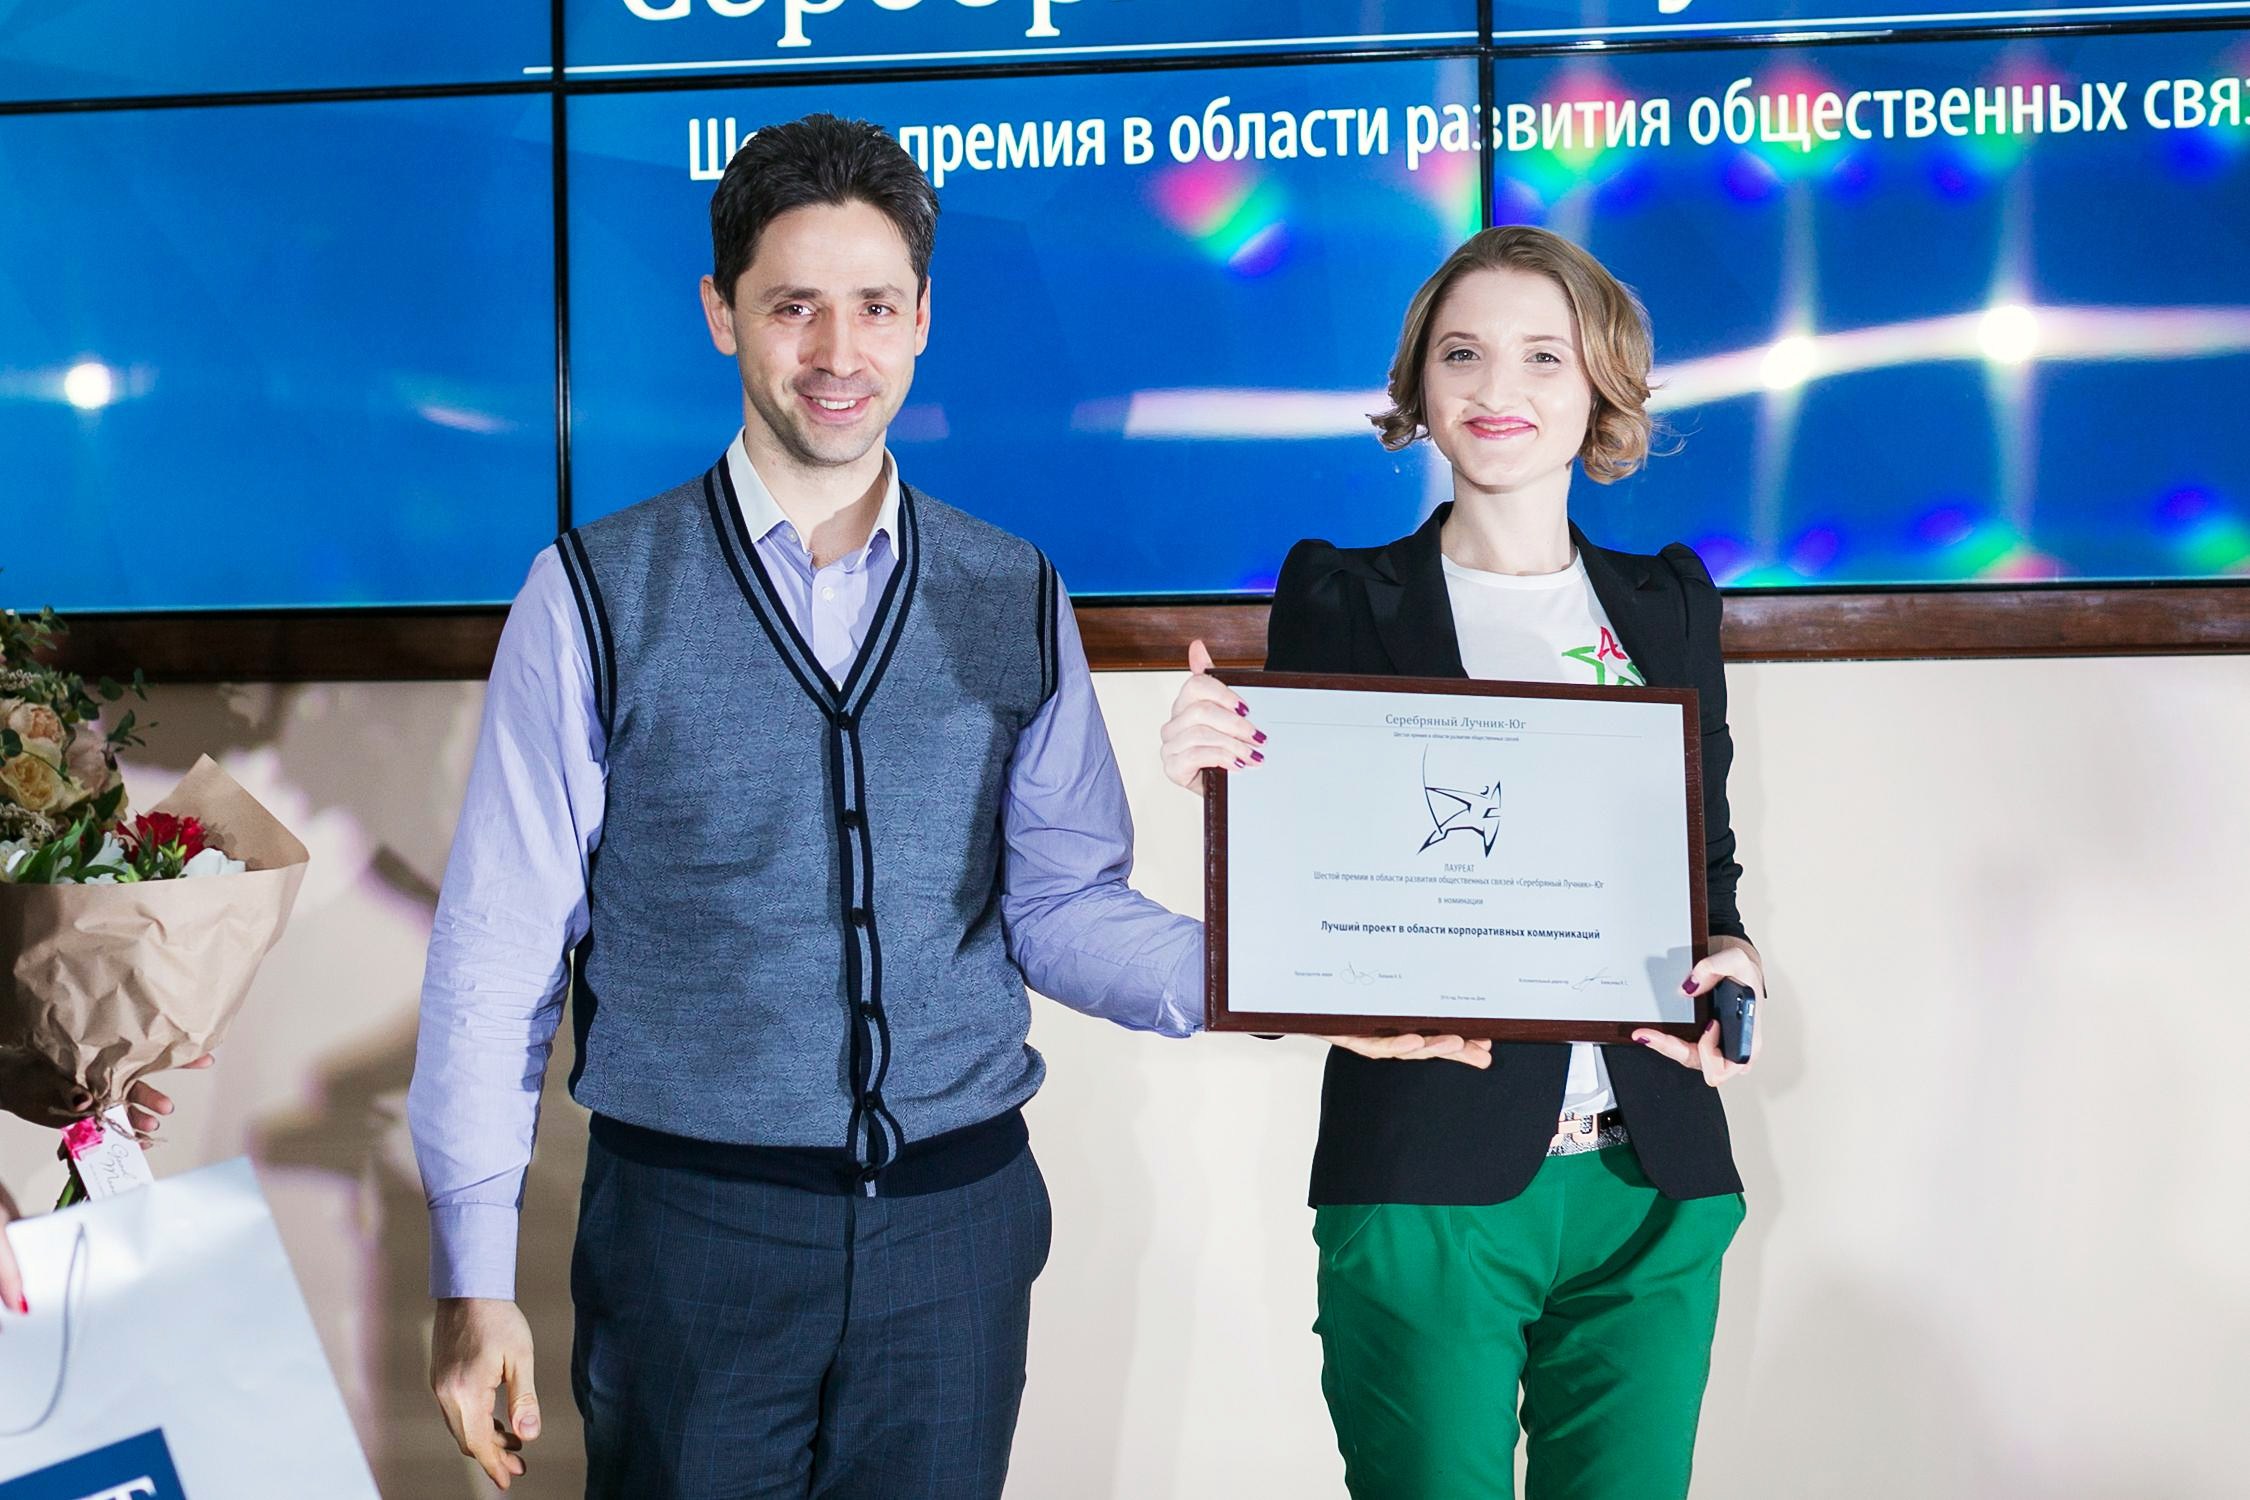 Лучшие PR – проекты юга России по итогам 2015 года стали известны 5 февраля